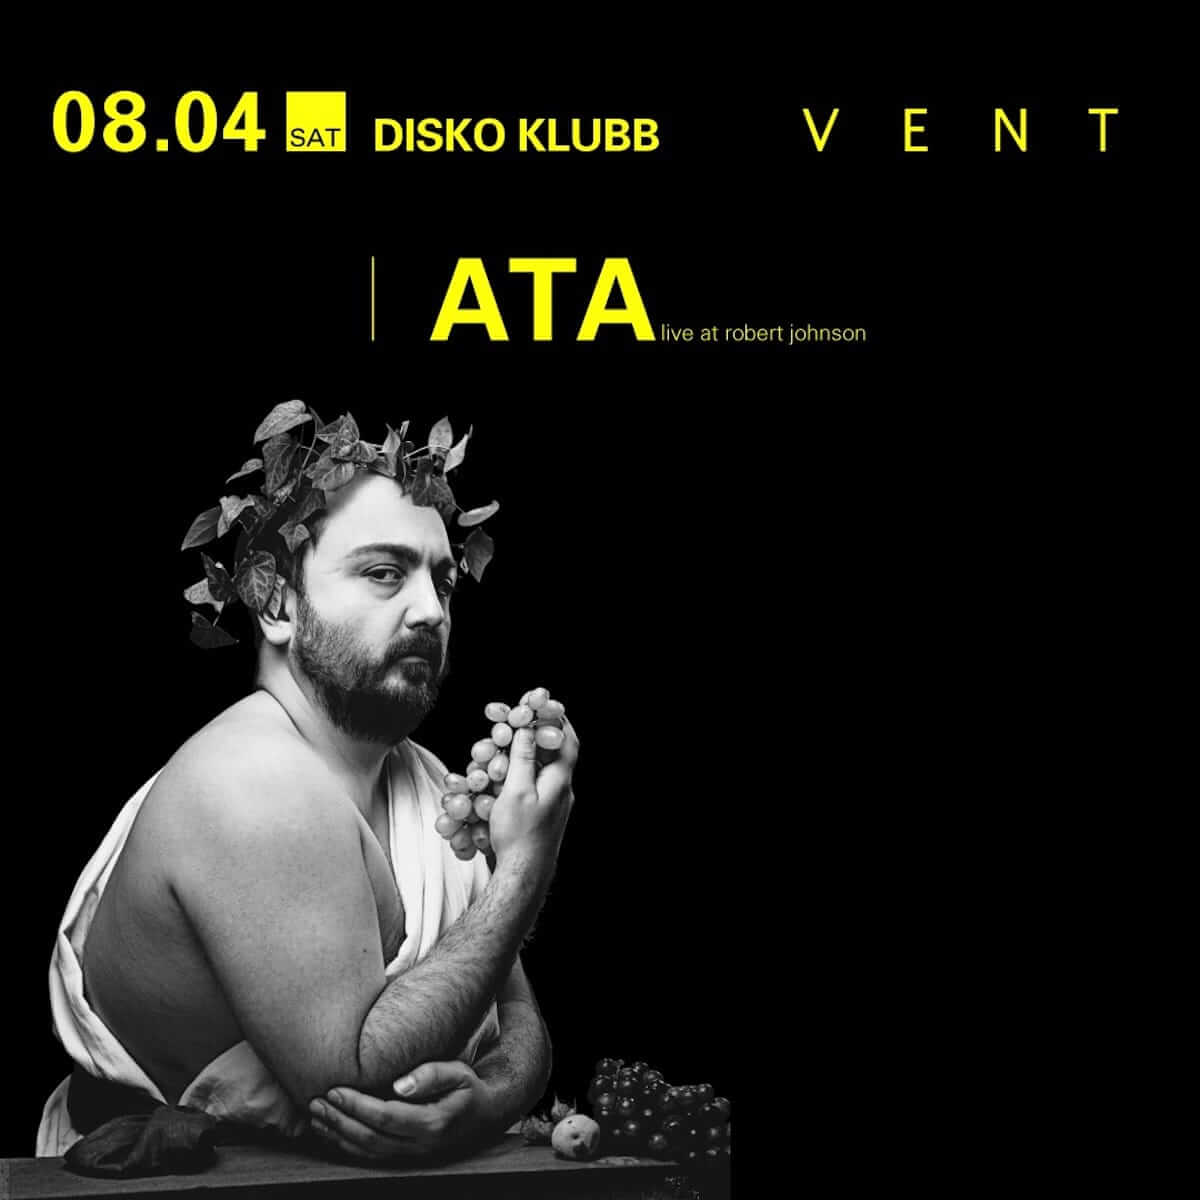 ヨーロッパのエレクトロニック・ミュージックシーンのゴッドファーザー・ATAがMONKEY TIMERS主催「DISKO KLUBB」に登場 music180801-ata-2-1200x1200